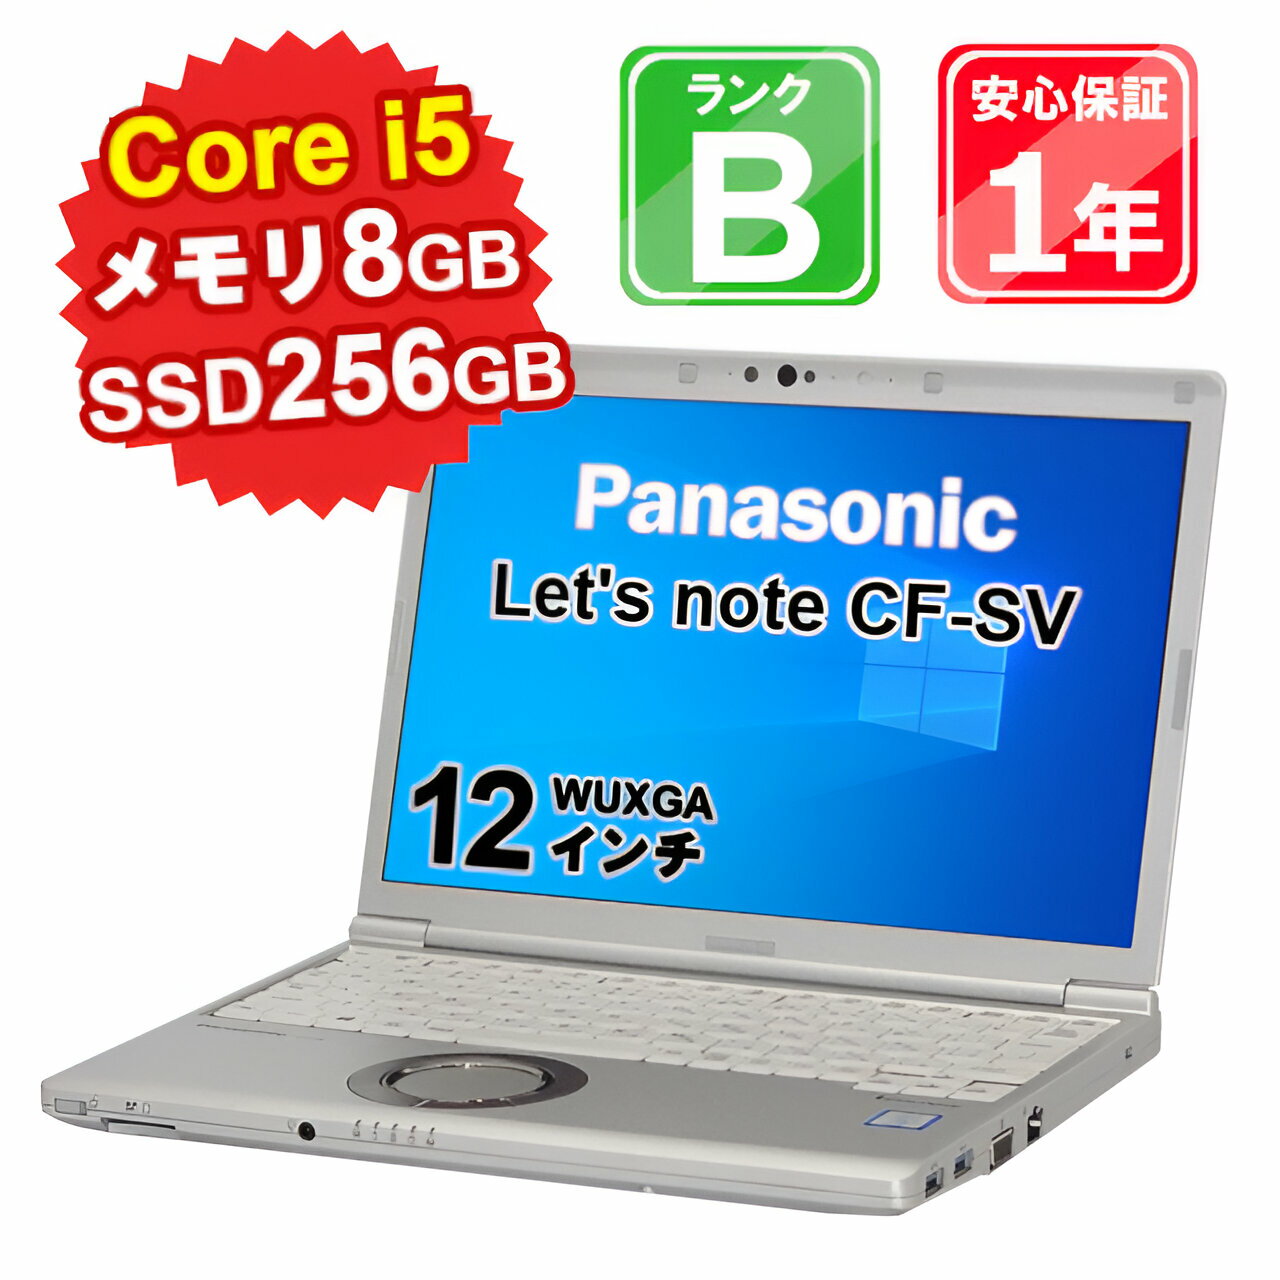  中古 パソコン ノートパソコン Panasonic Let'snote CF-SV7 CF-SV7RDCVS Core i5-8350U 1.7GHz メモリ8GB SSD256GB Windows10Pro 12インチ WUXGA WebCamera有 1年保証 